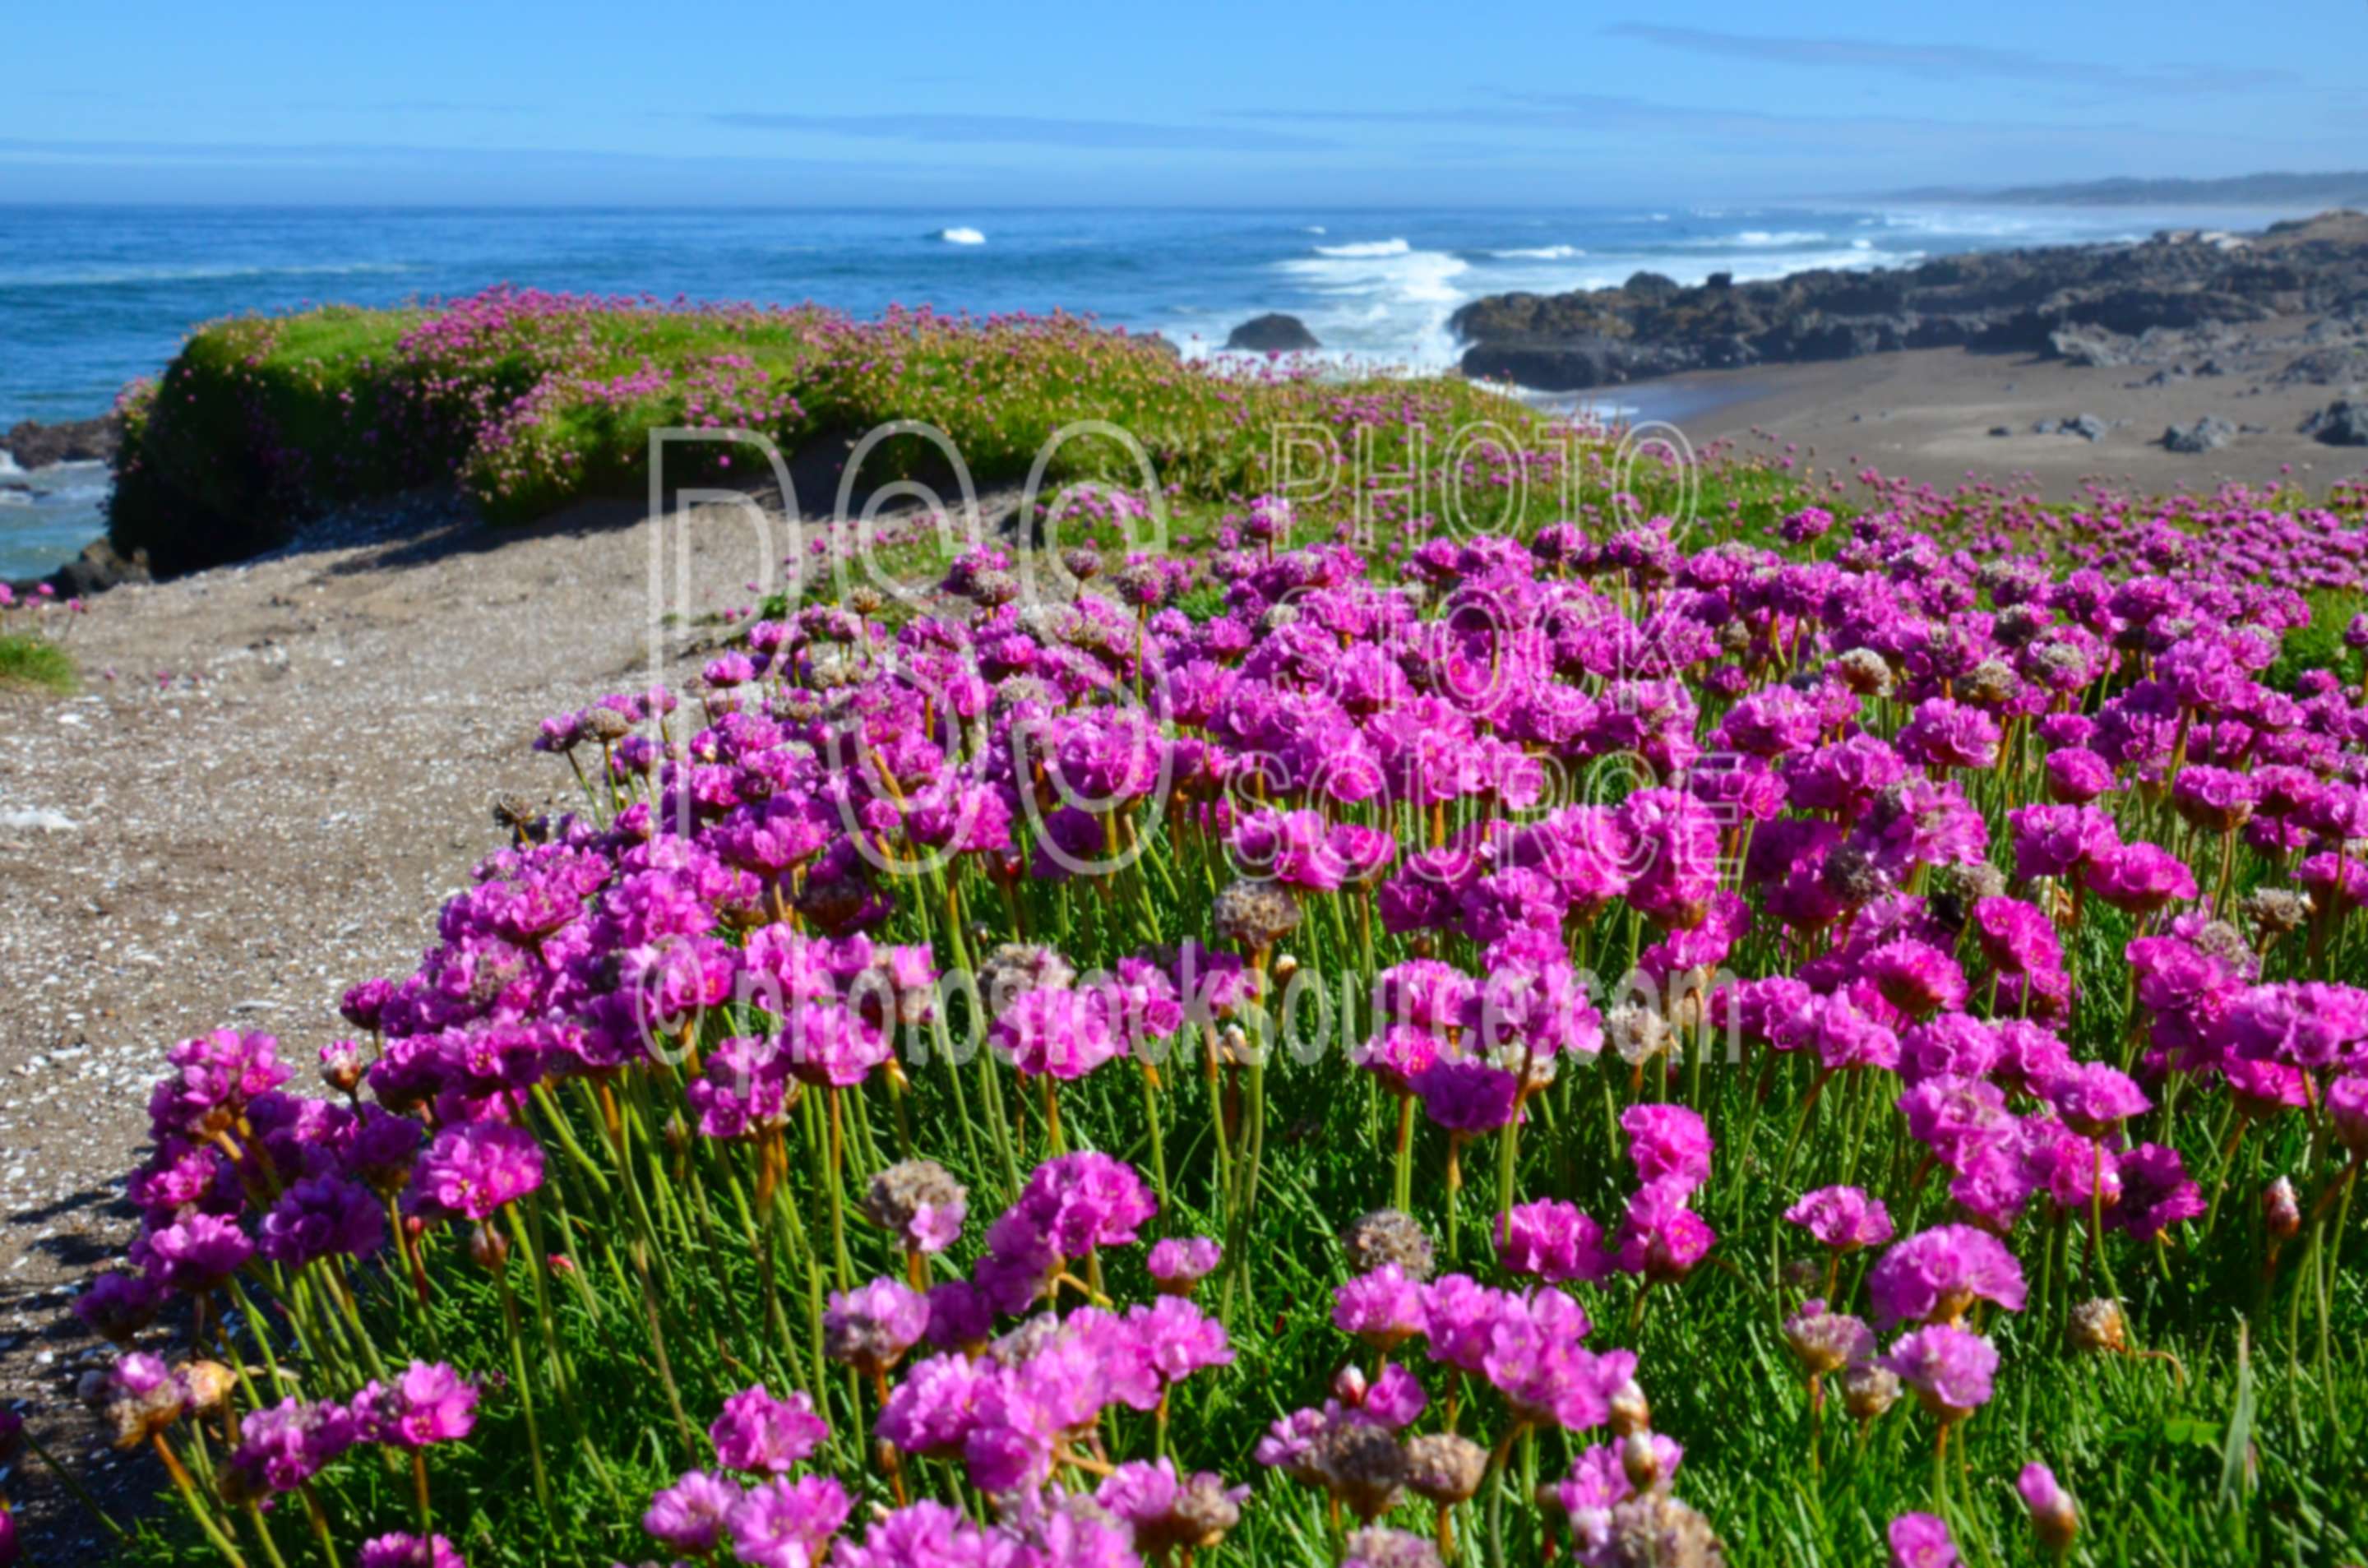 Sea Pink Flowers,beach,sand,ocean,flowers,coast,waves,wildflowers